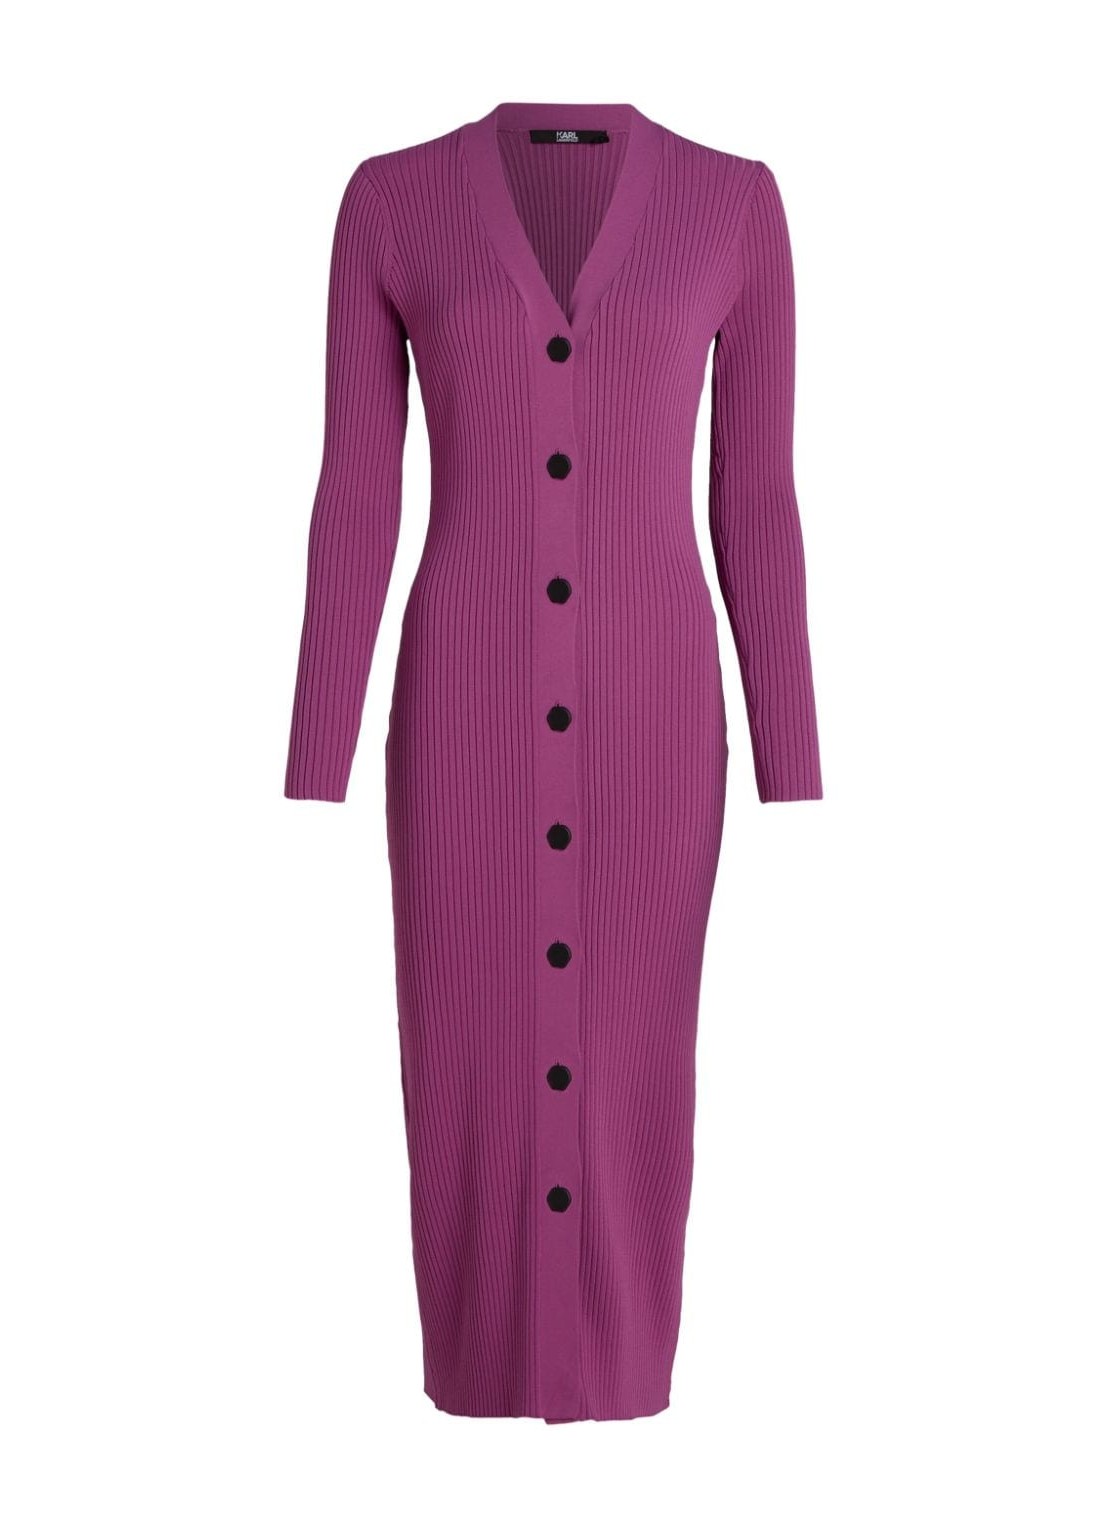 Vestido karl lagerfeld dress woman ls knit dress 236w1308 471 talla violeta
 